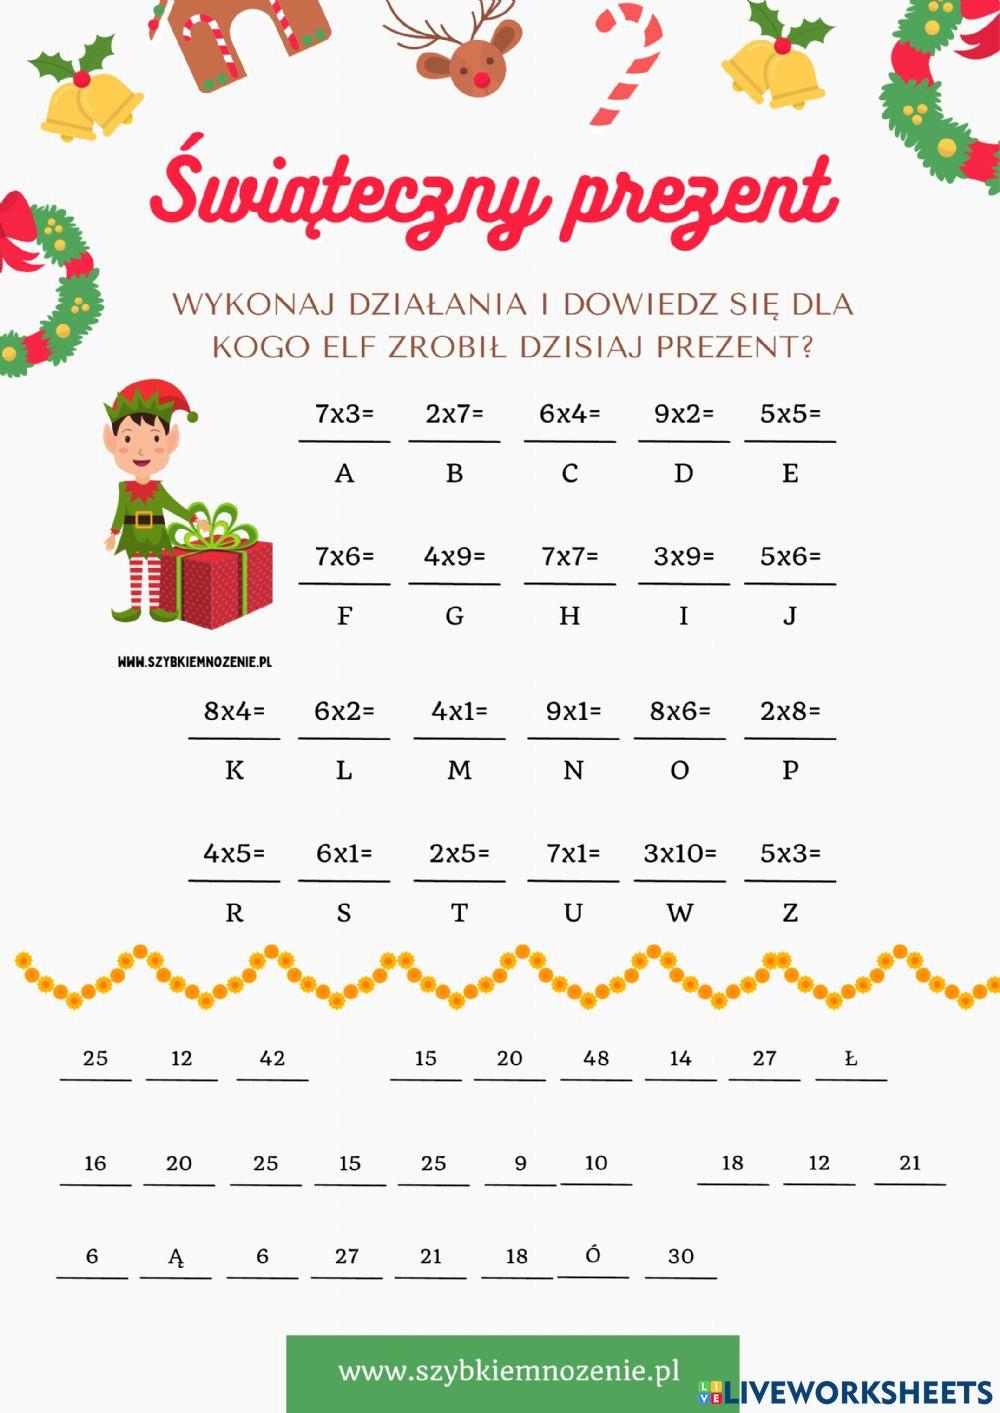 Świąteczny prezent Elfa-tabliczka mnożenia